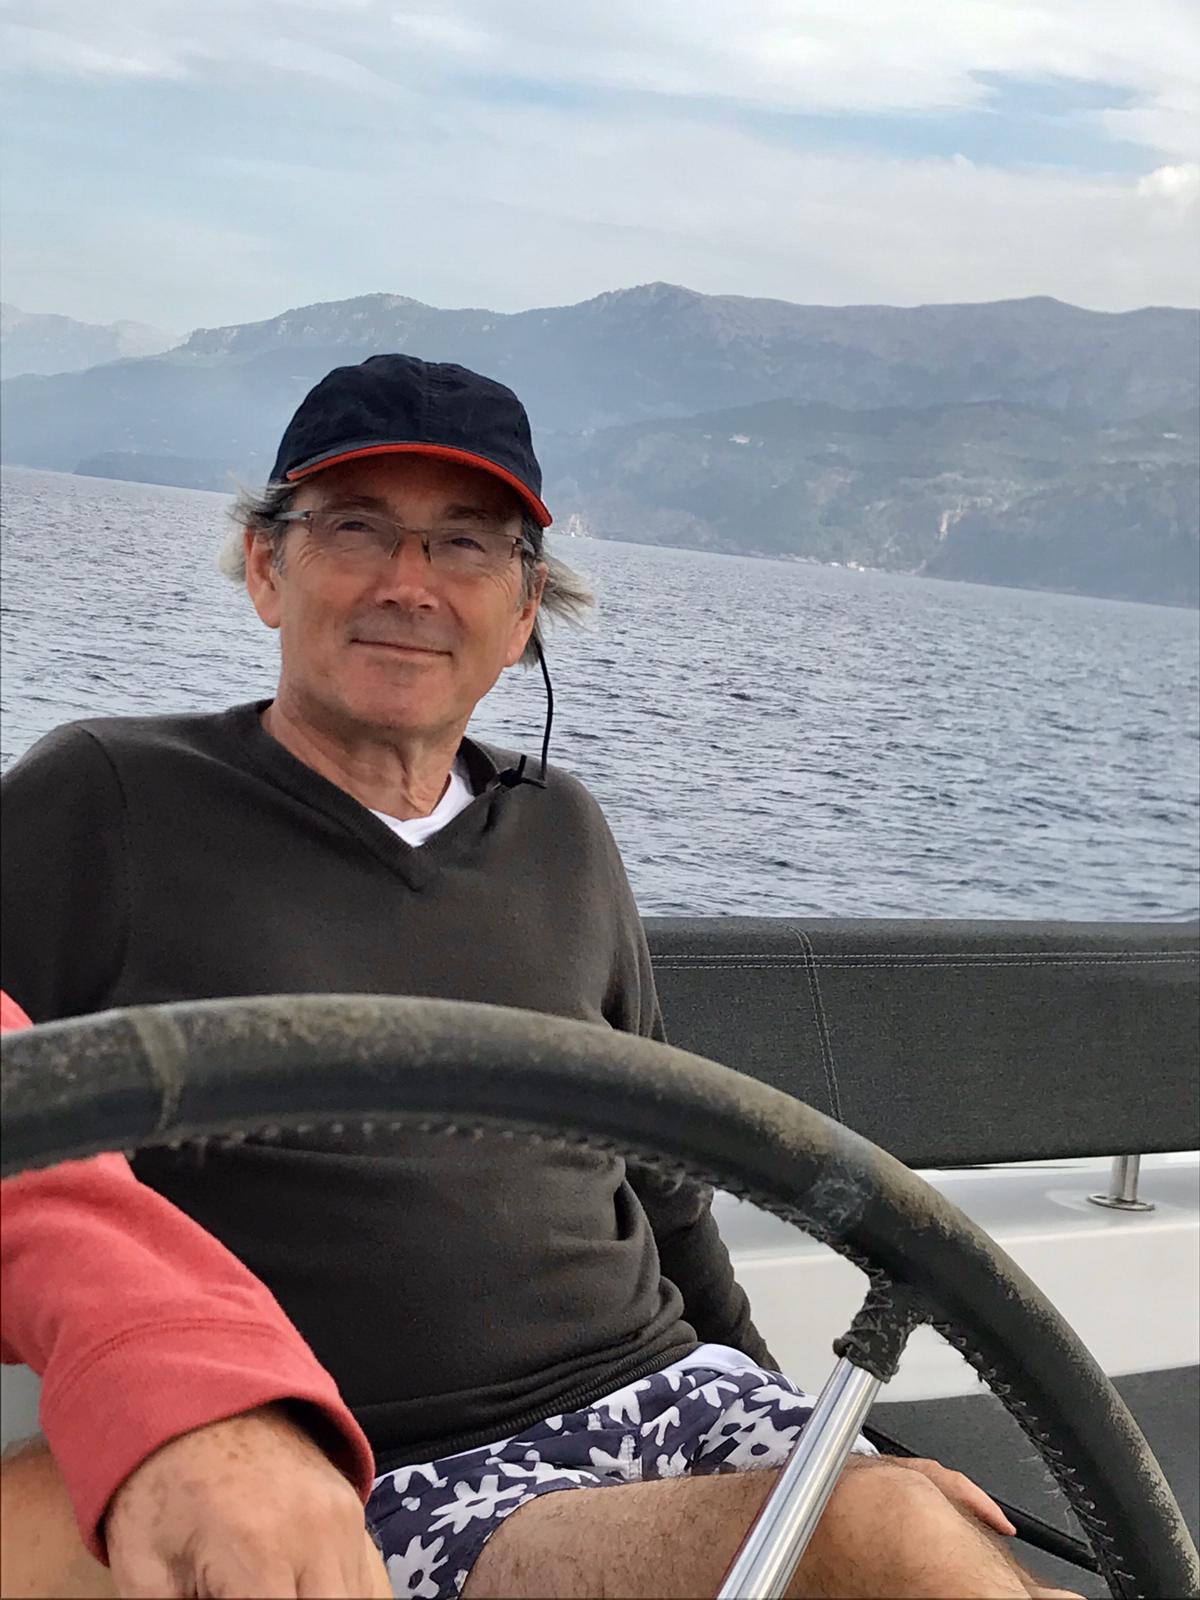 Départ transatlantique catamaran : Marco ravit de rejoindre l'aventure transatlantique